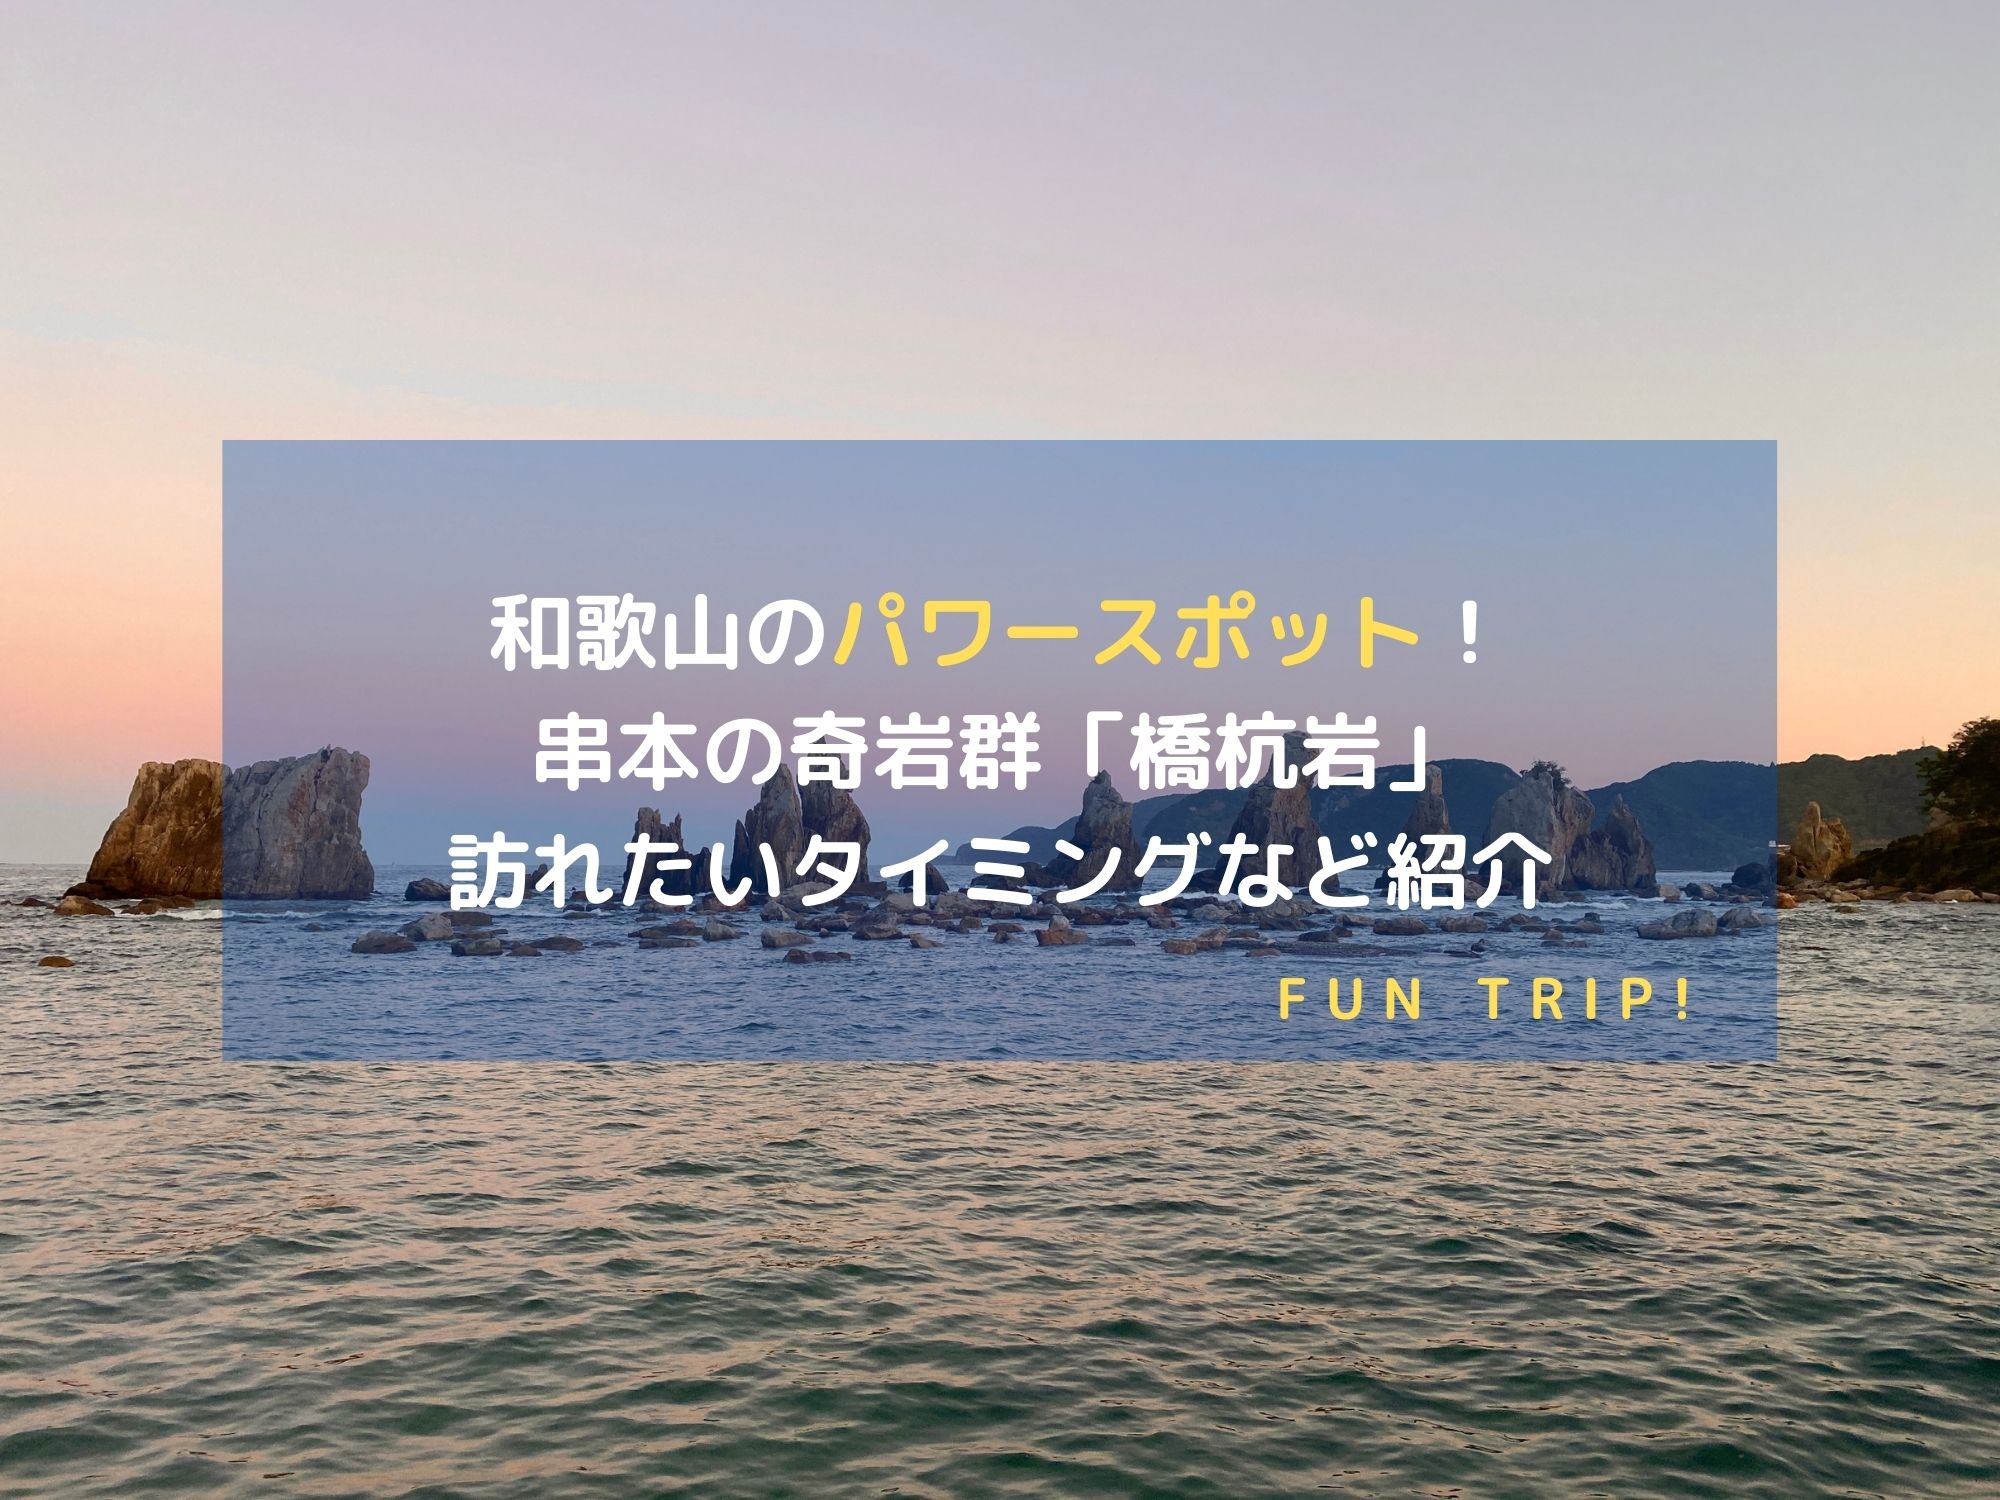 和歌山県串本にある奇岩群「橋杭岩」の風景